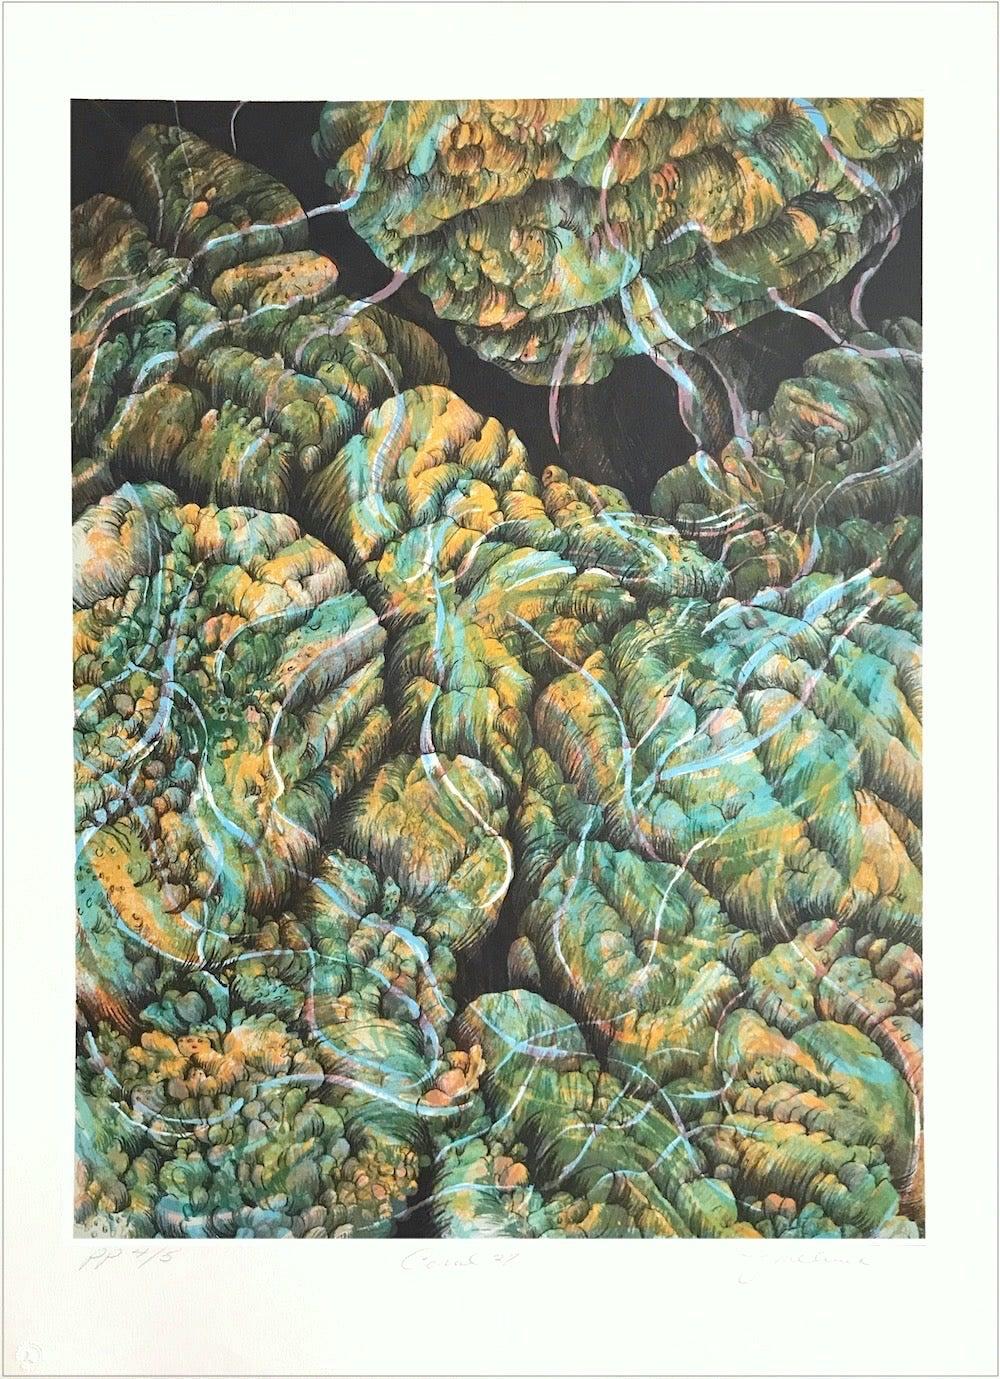 Joan Melnick Abstract Print – Koralle 27: Aqua, Gelb, signierte Lithographie, Abstrakte Natur, Korallenriff, Wasser